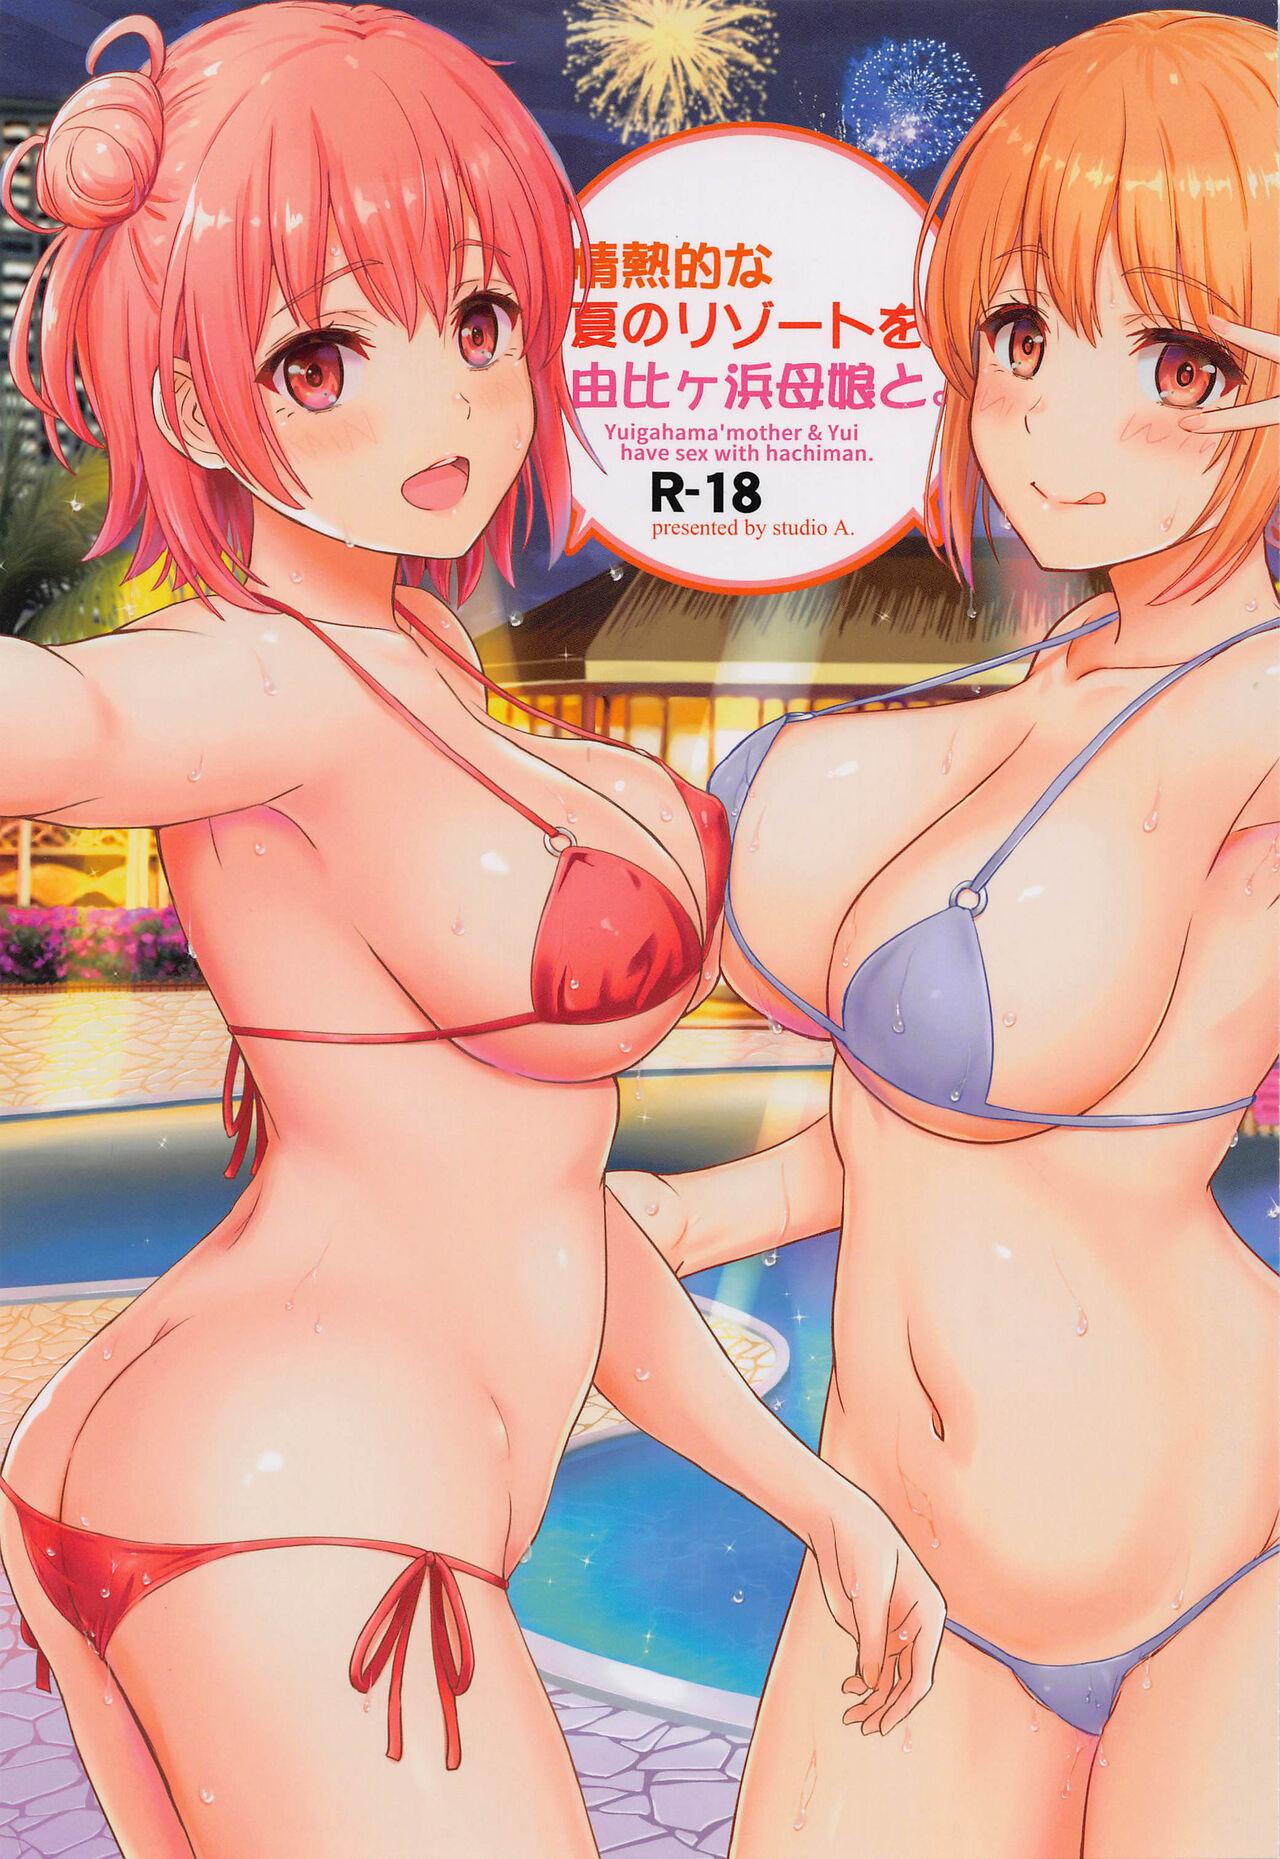 Porno Jounetsuteki na Natsu no Resort o Yuigahama Oyako to. - Yahari ore no seishun love come wa machigatteiru Women Sucking Dick - Page 1